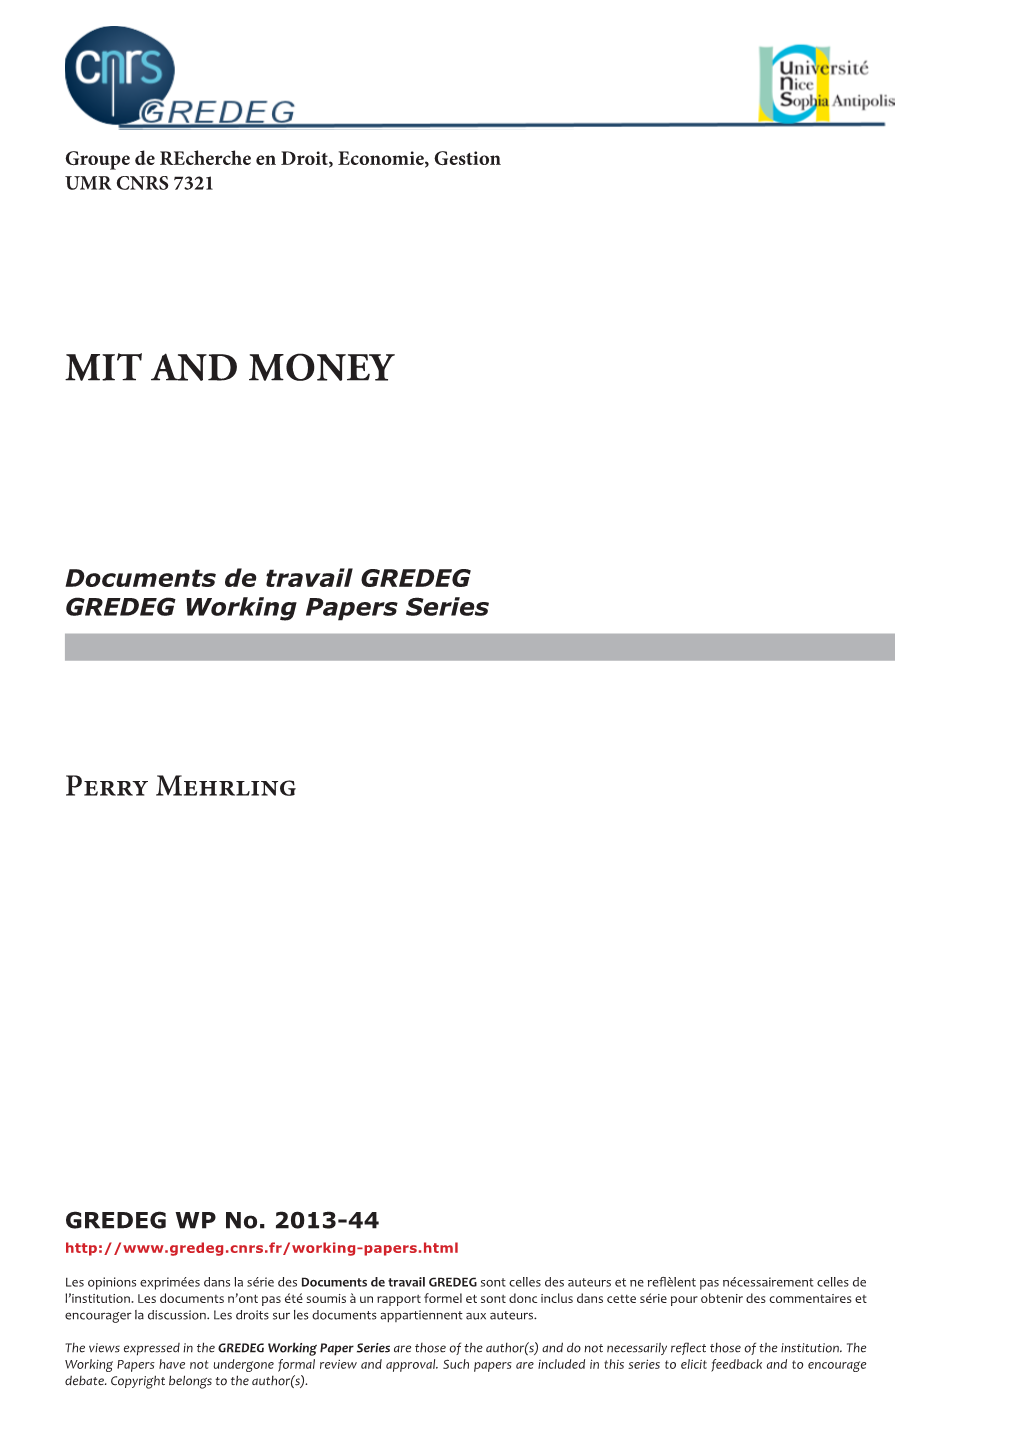 Mit and Money